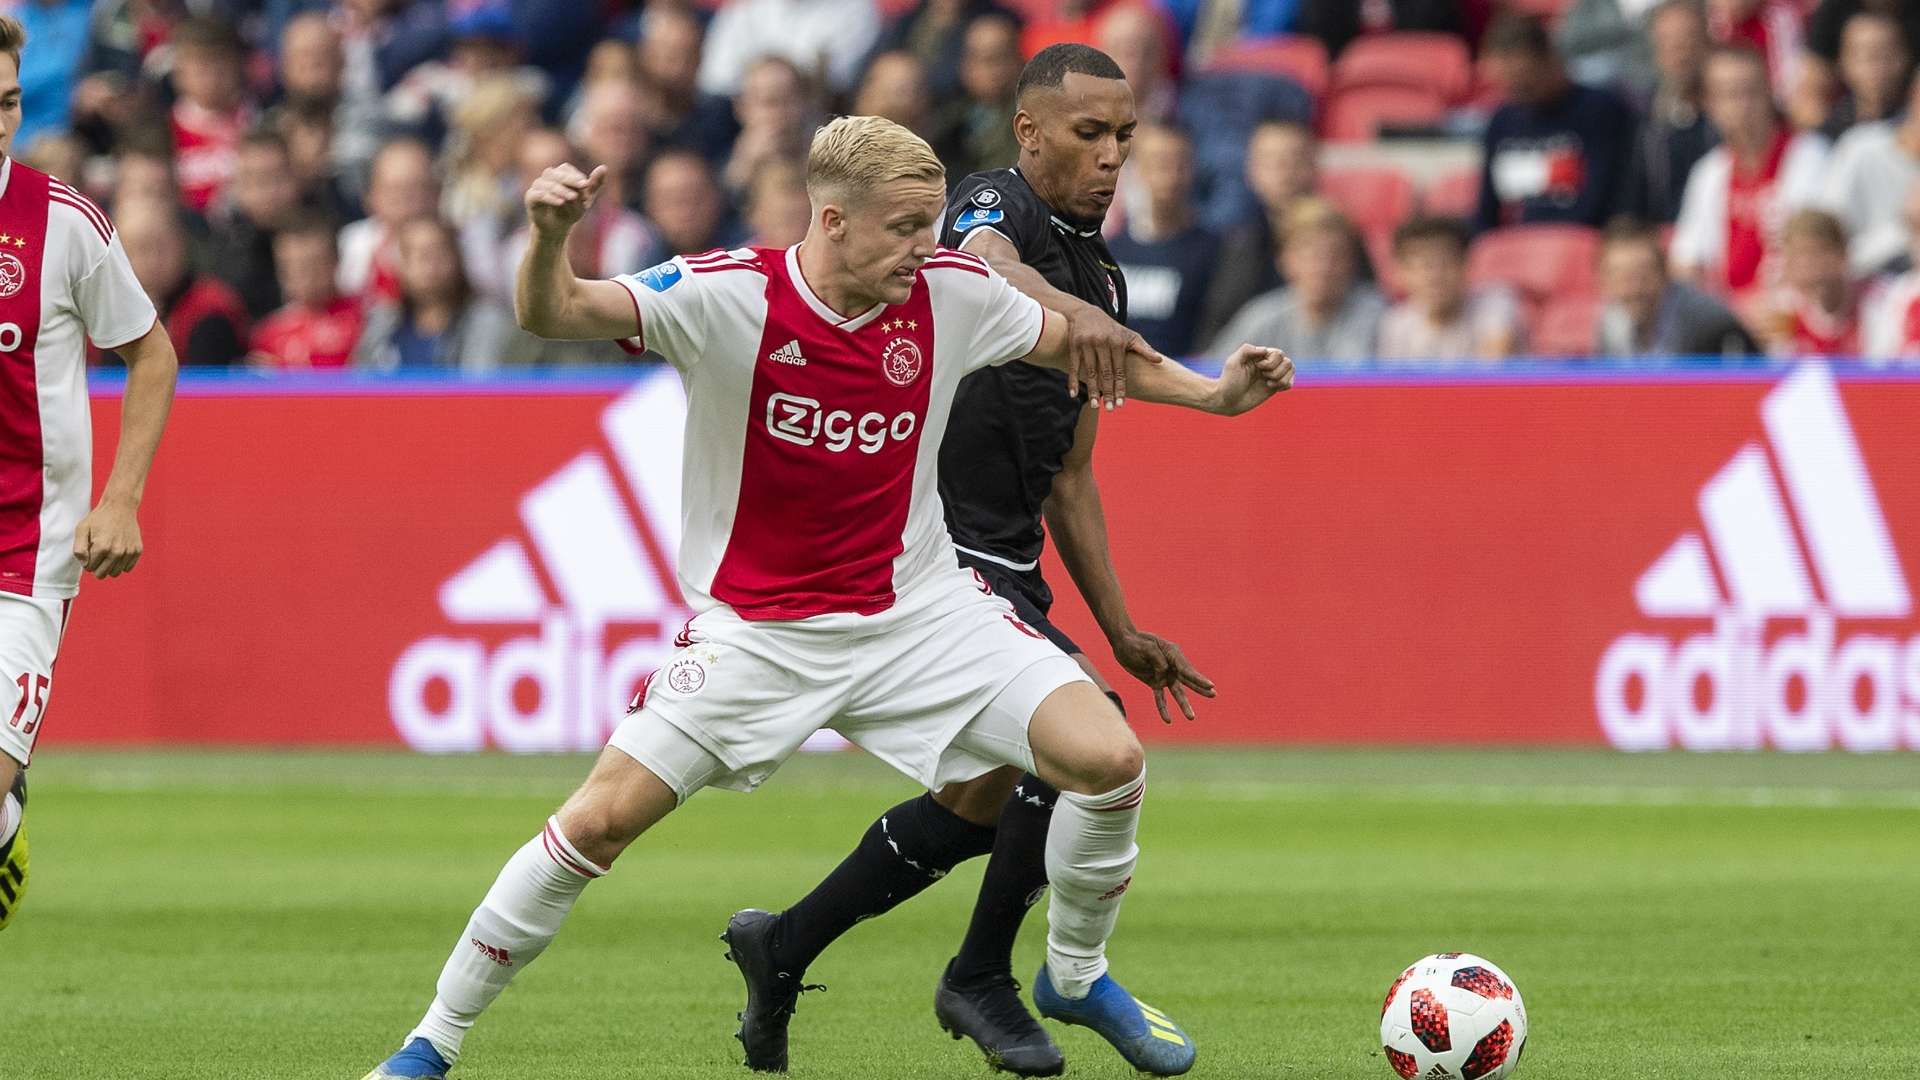 Donny van de Beek, Ajax, Eredivisie 08252018